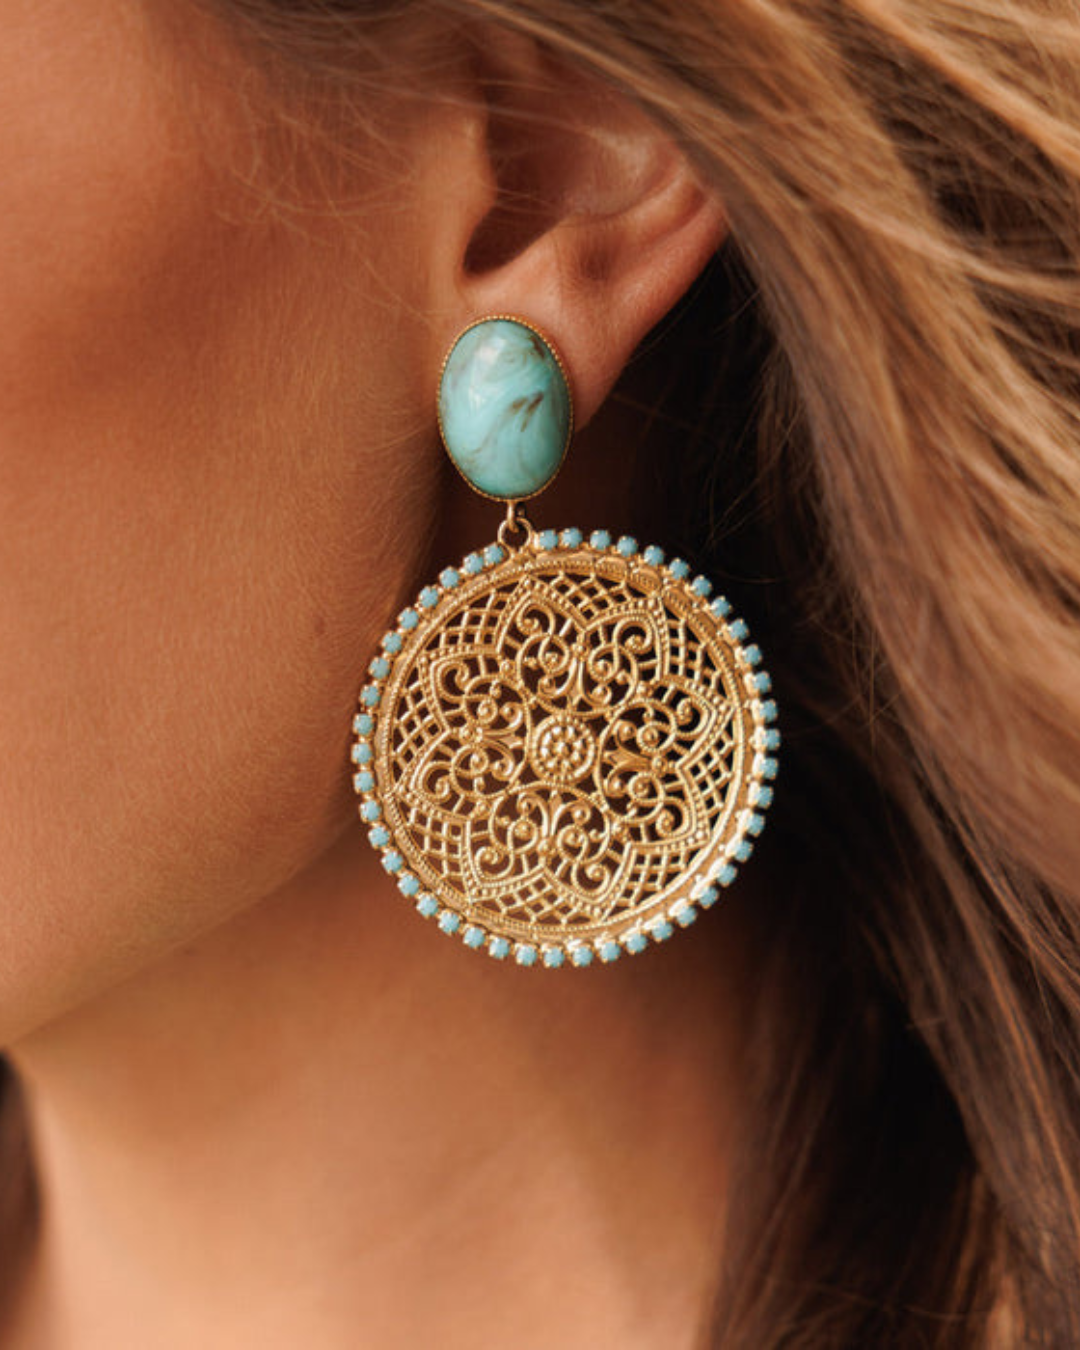 Alexandra Boho Earrings / Turquoise Matt - Gold